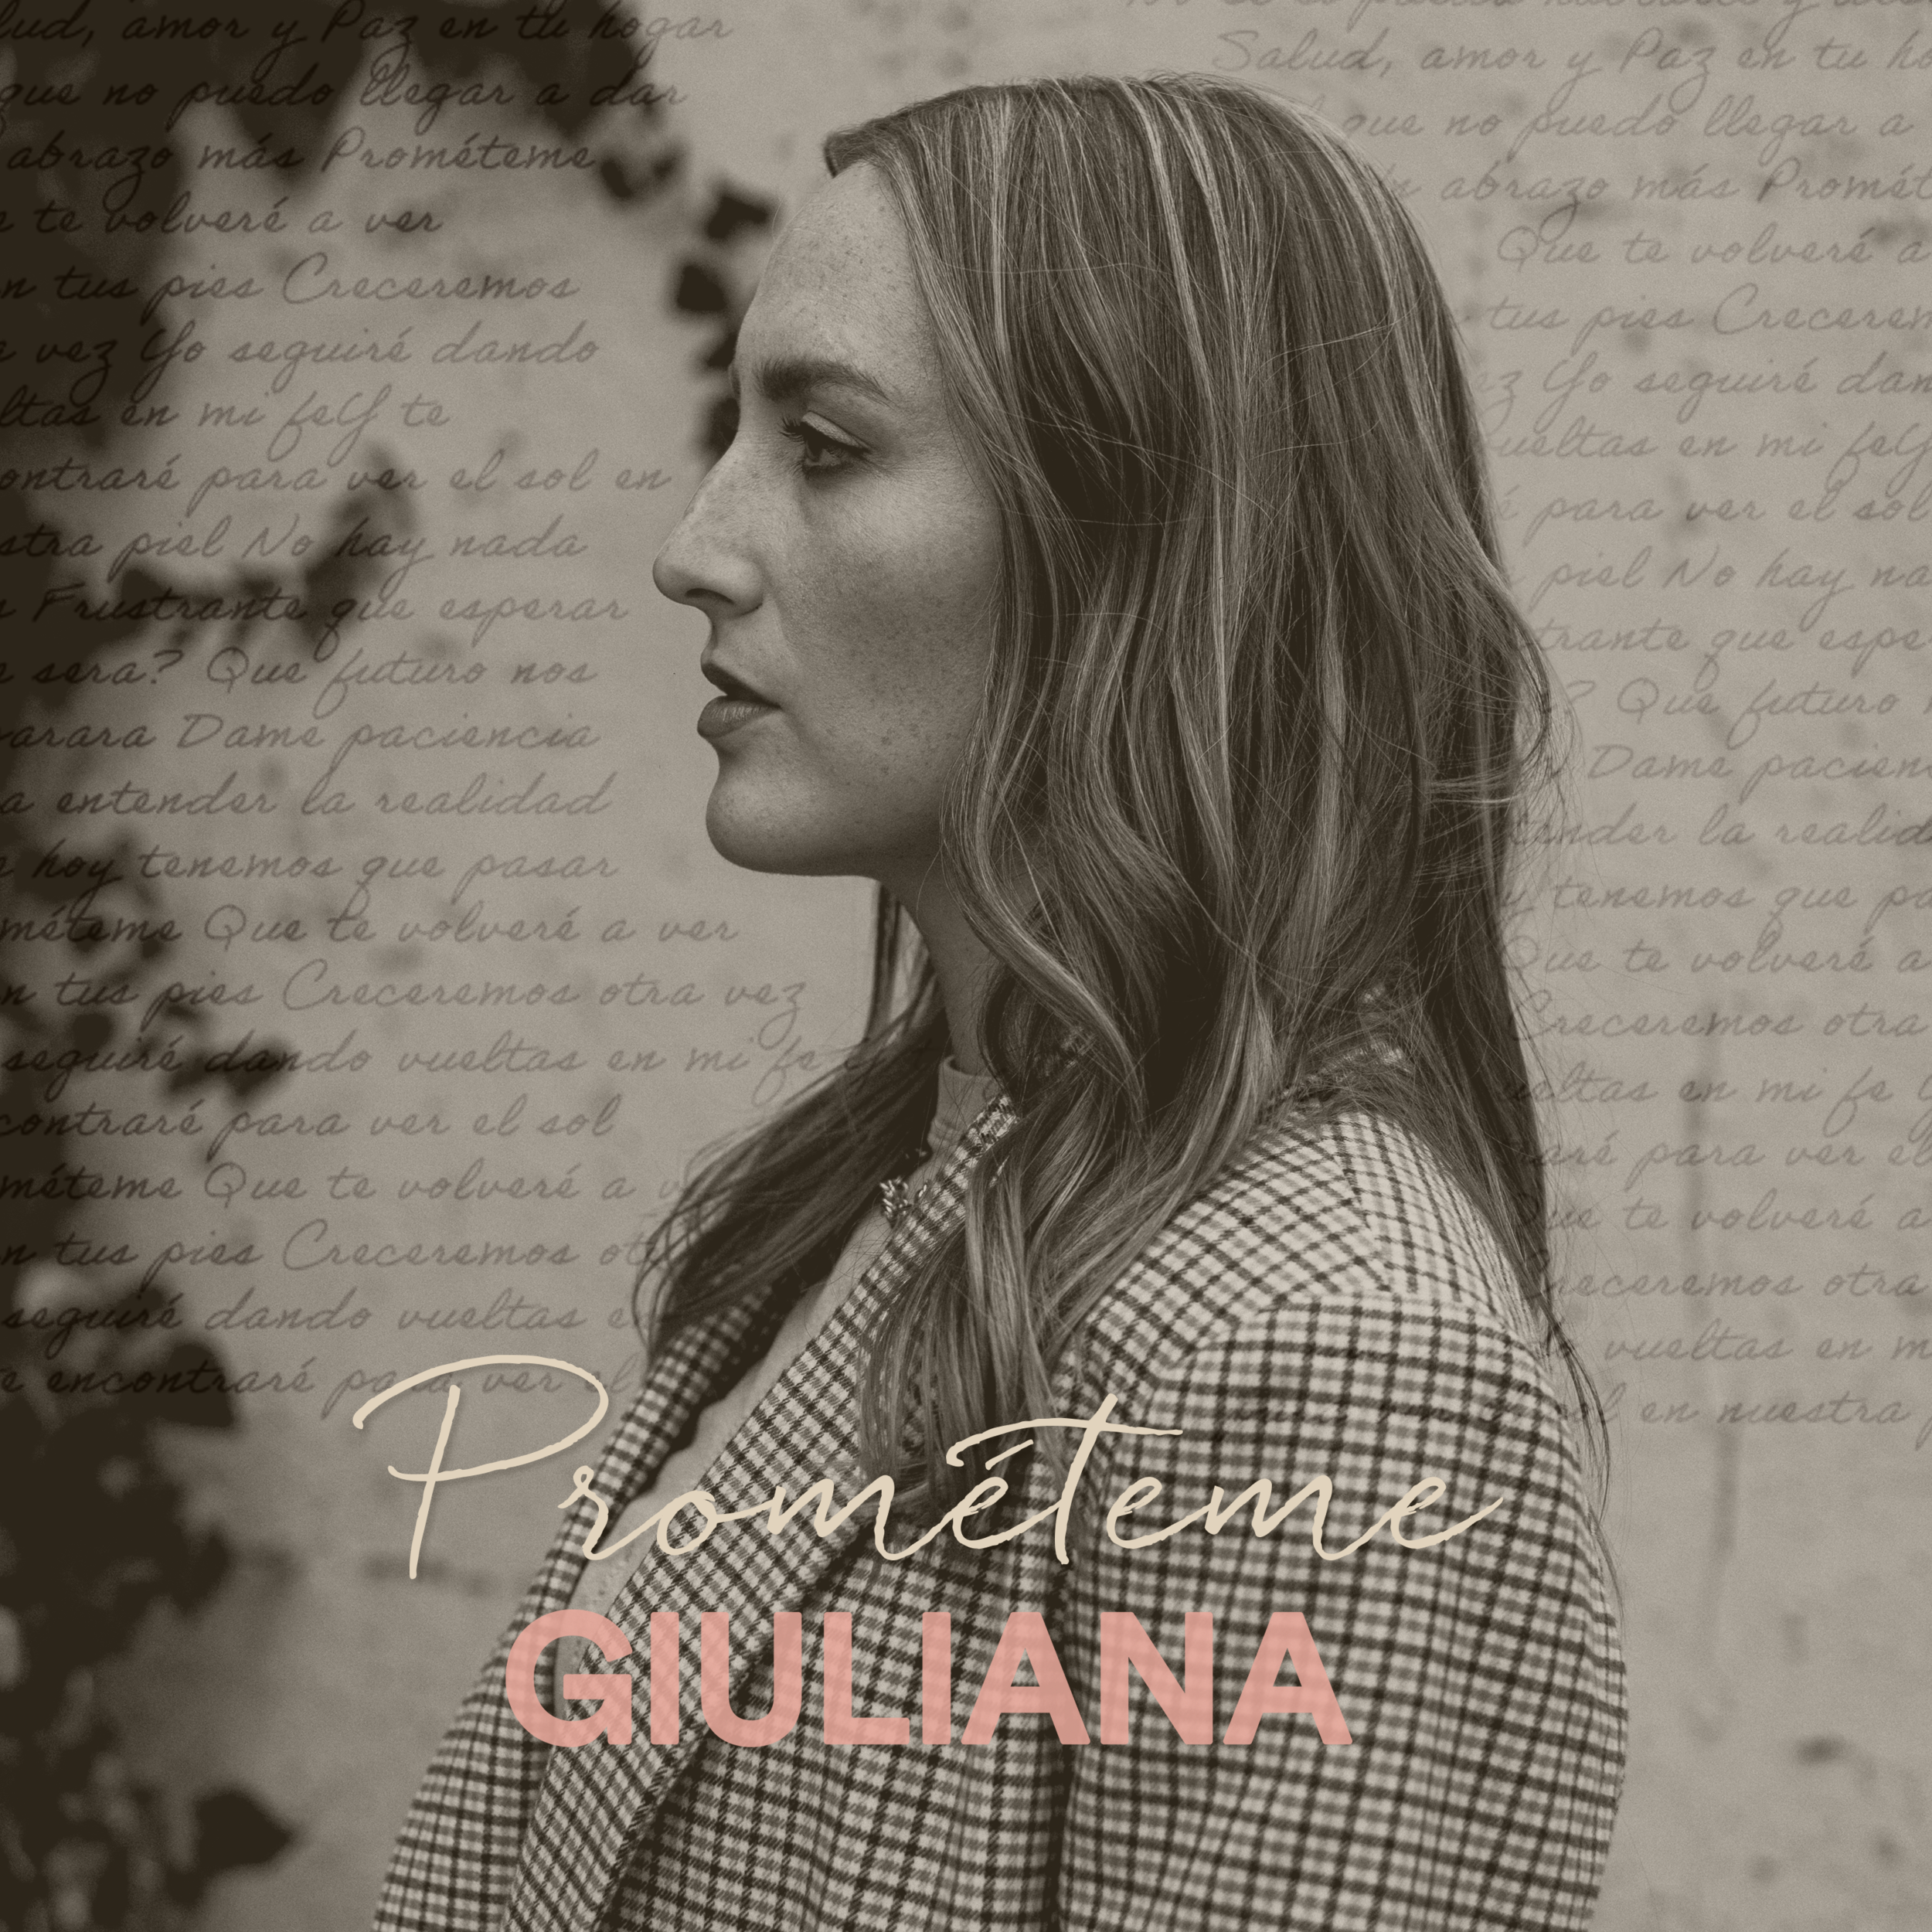 Giuliana - Prométeme